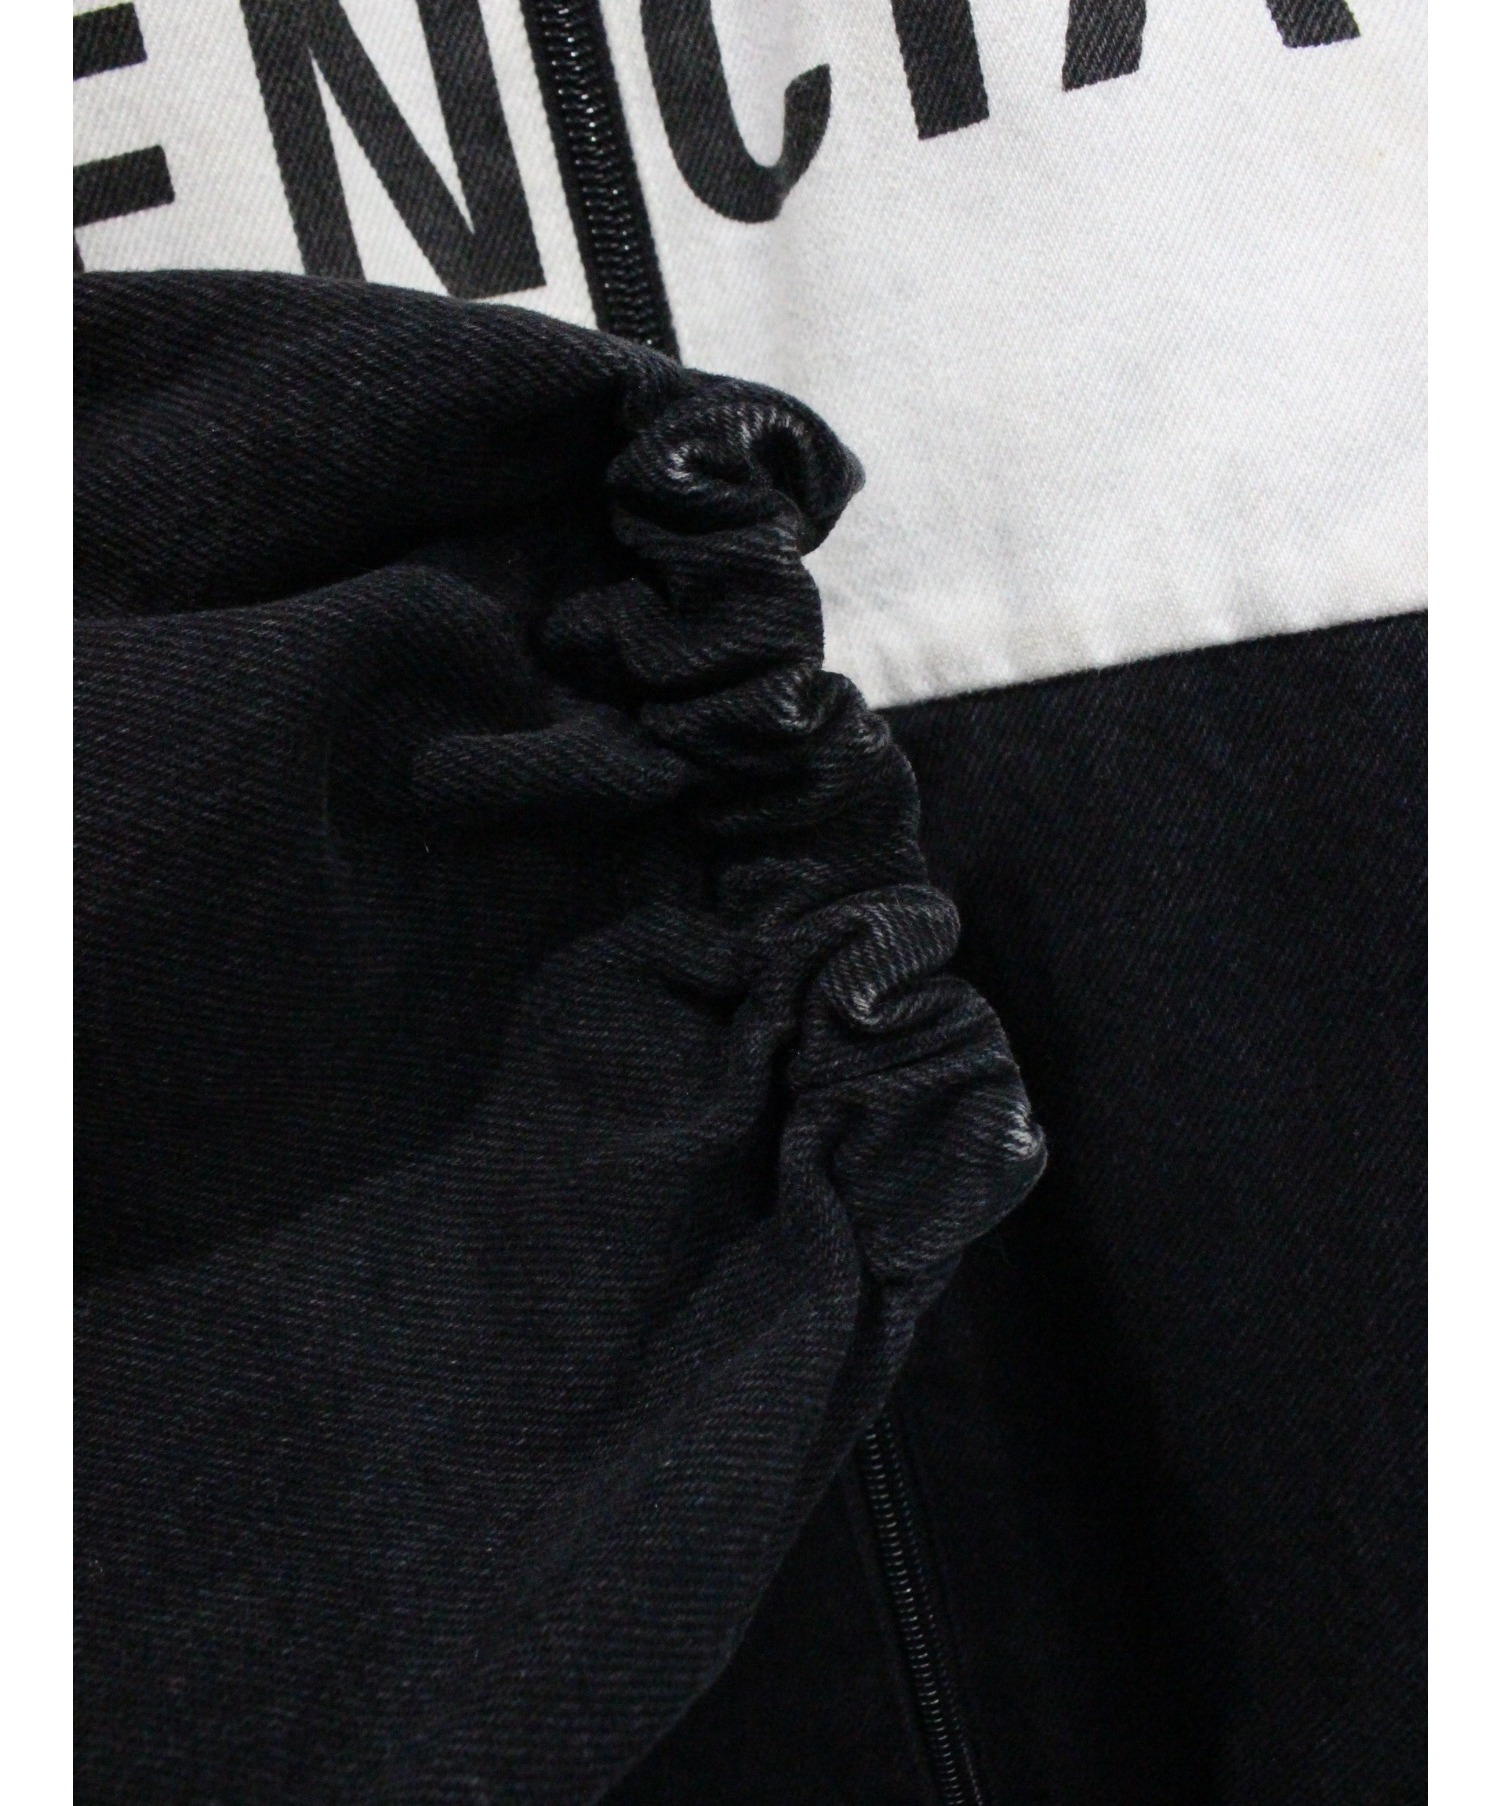 BALENCIAGA (バレンシアガ) ナイロンデニムジャケット ホワイト×ブラック サイズ:34